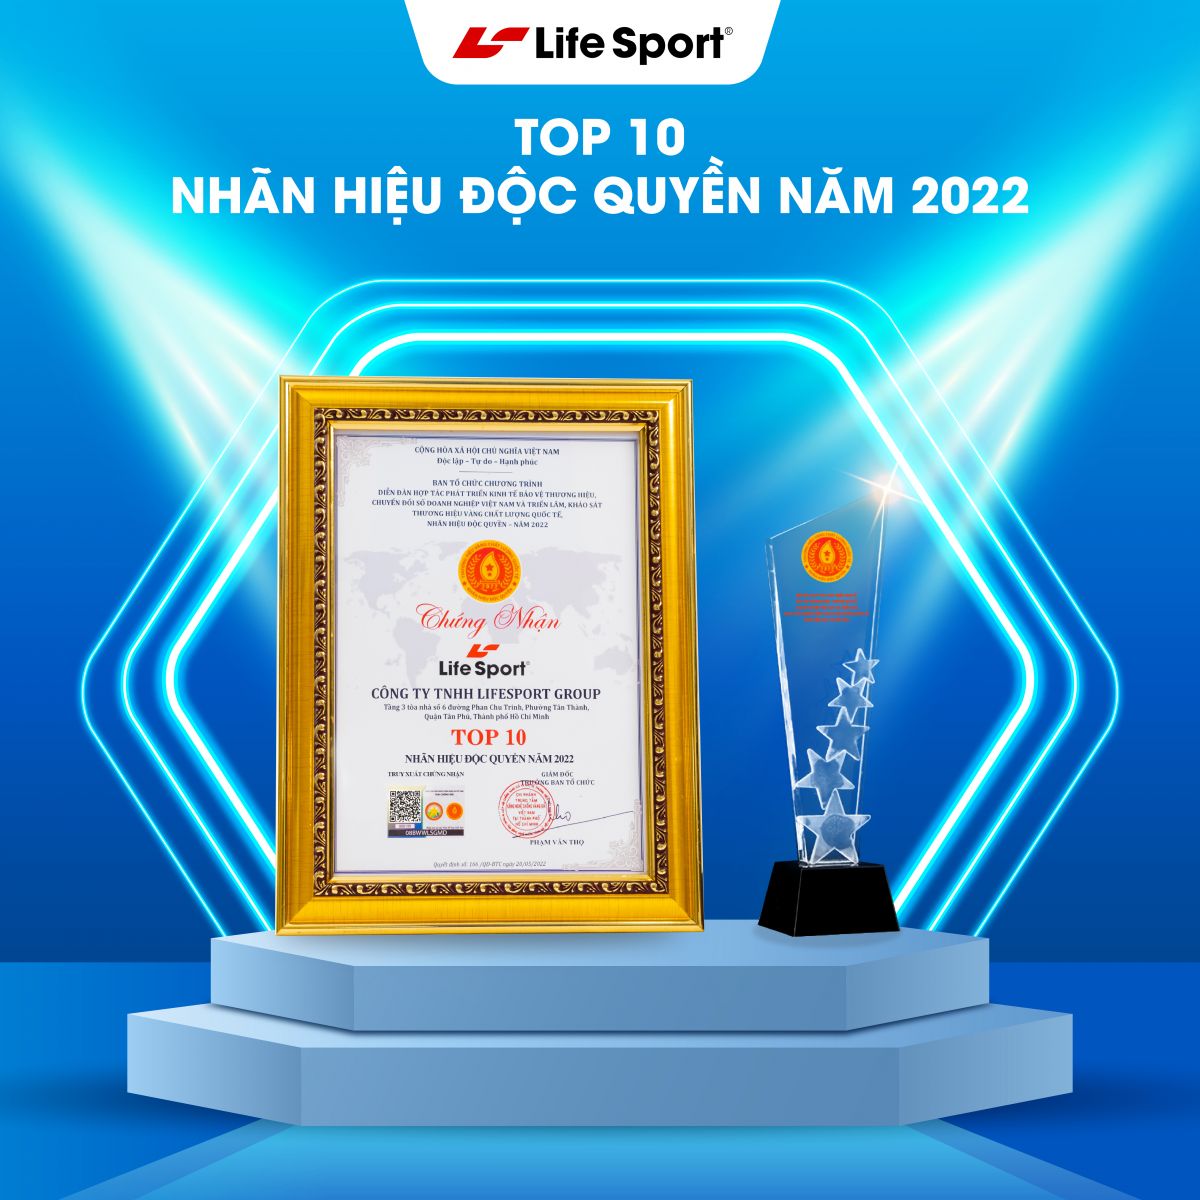 lifesport top 10 nhan hieu doc quyen 2022